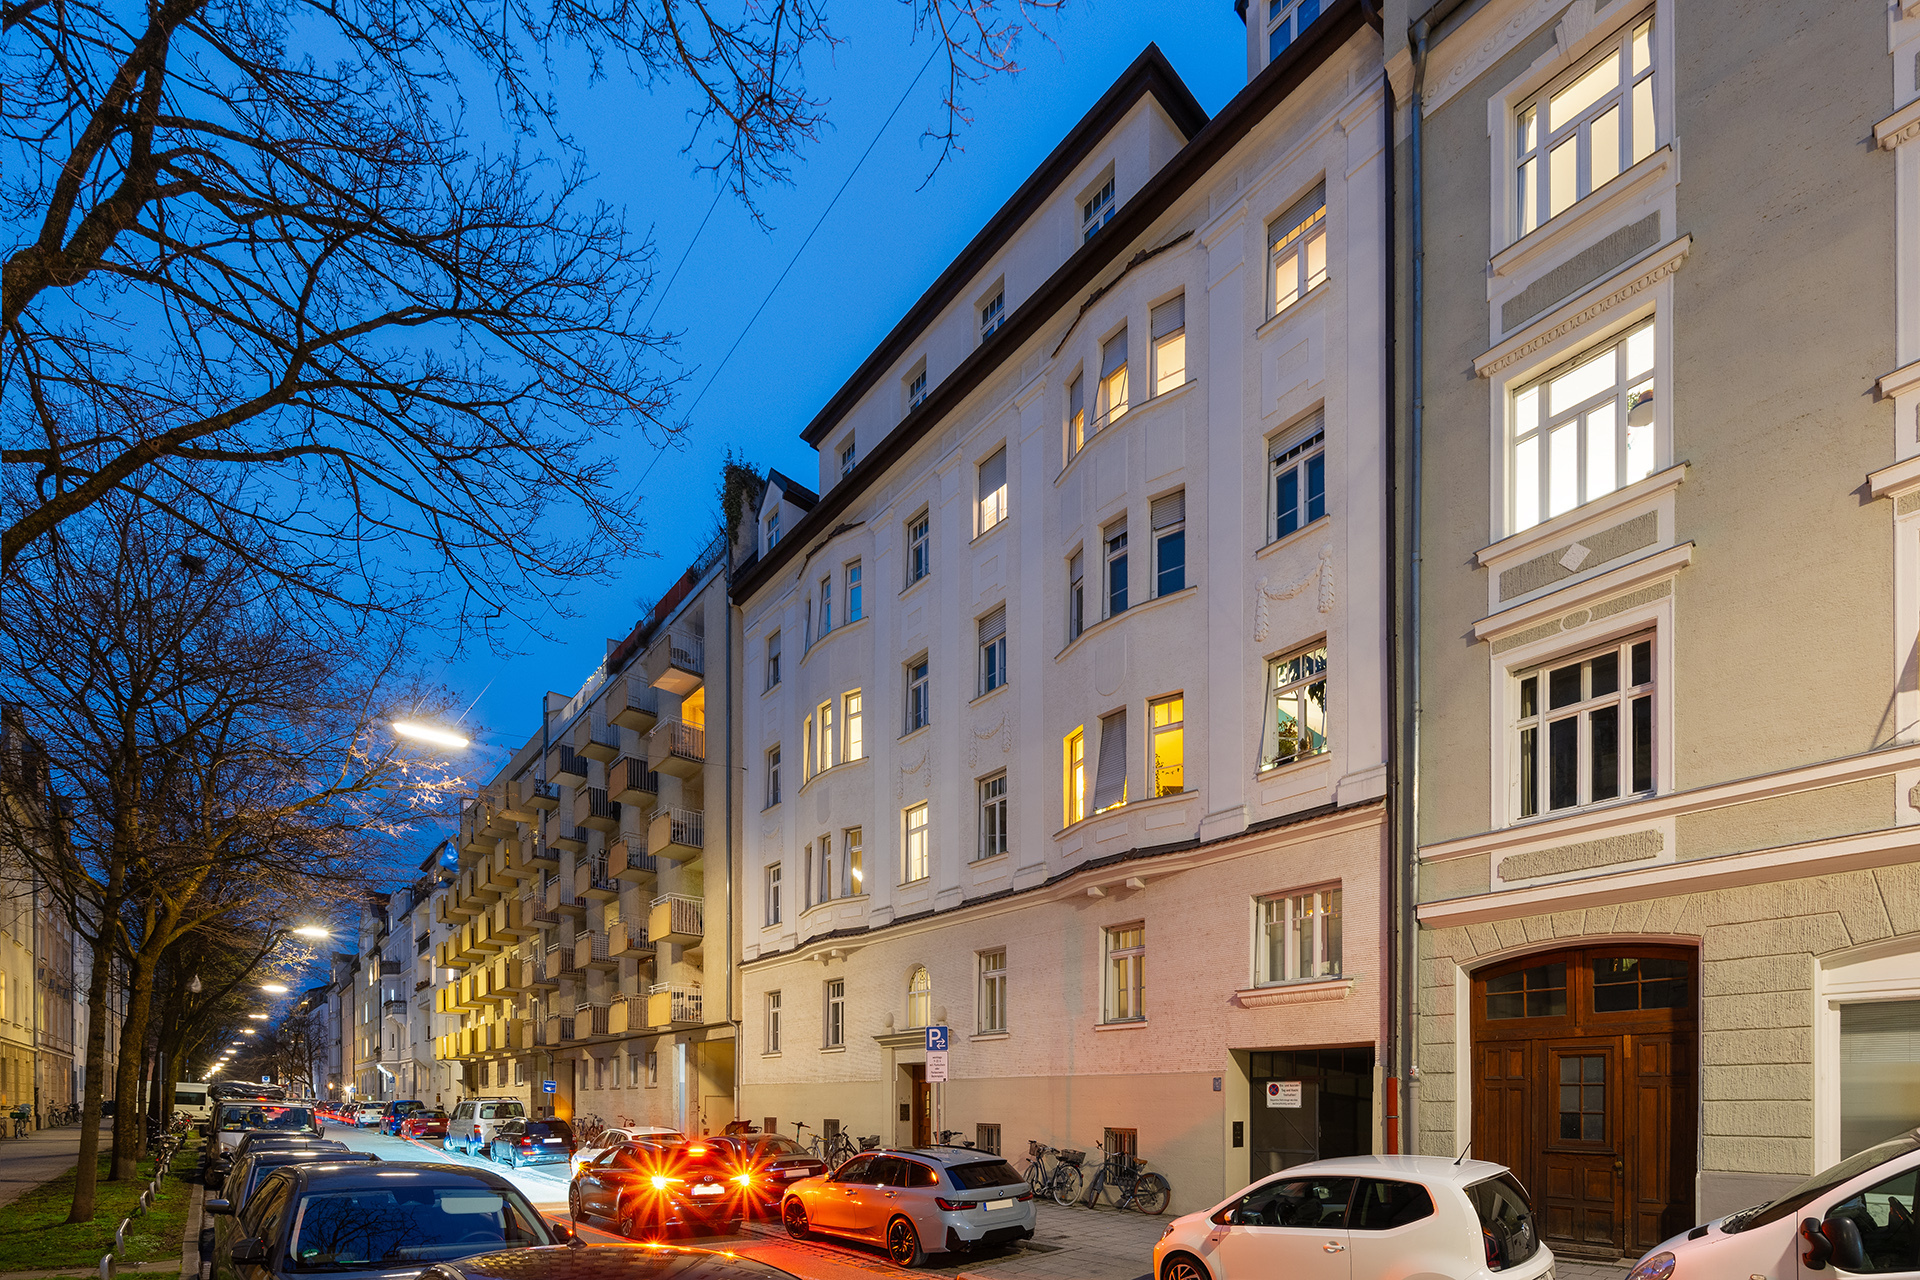 Außergewöhnliche, denkmalgeschützte 3-Zimmer-Stadtwohnung in München-Schwabing - Blick in die Straße